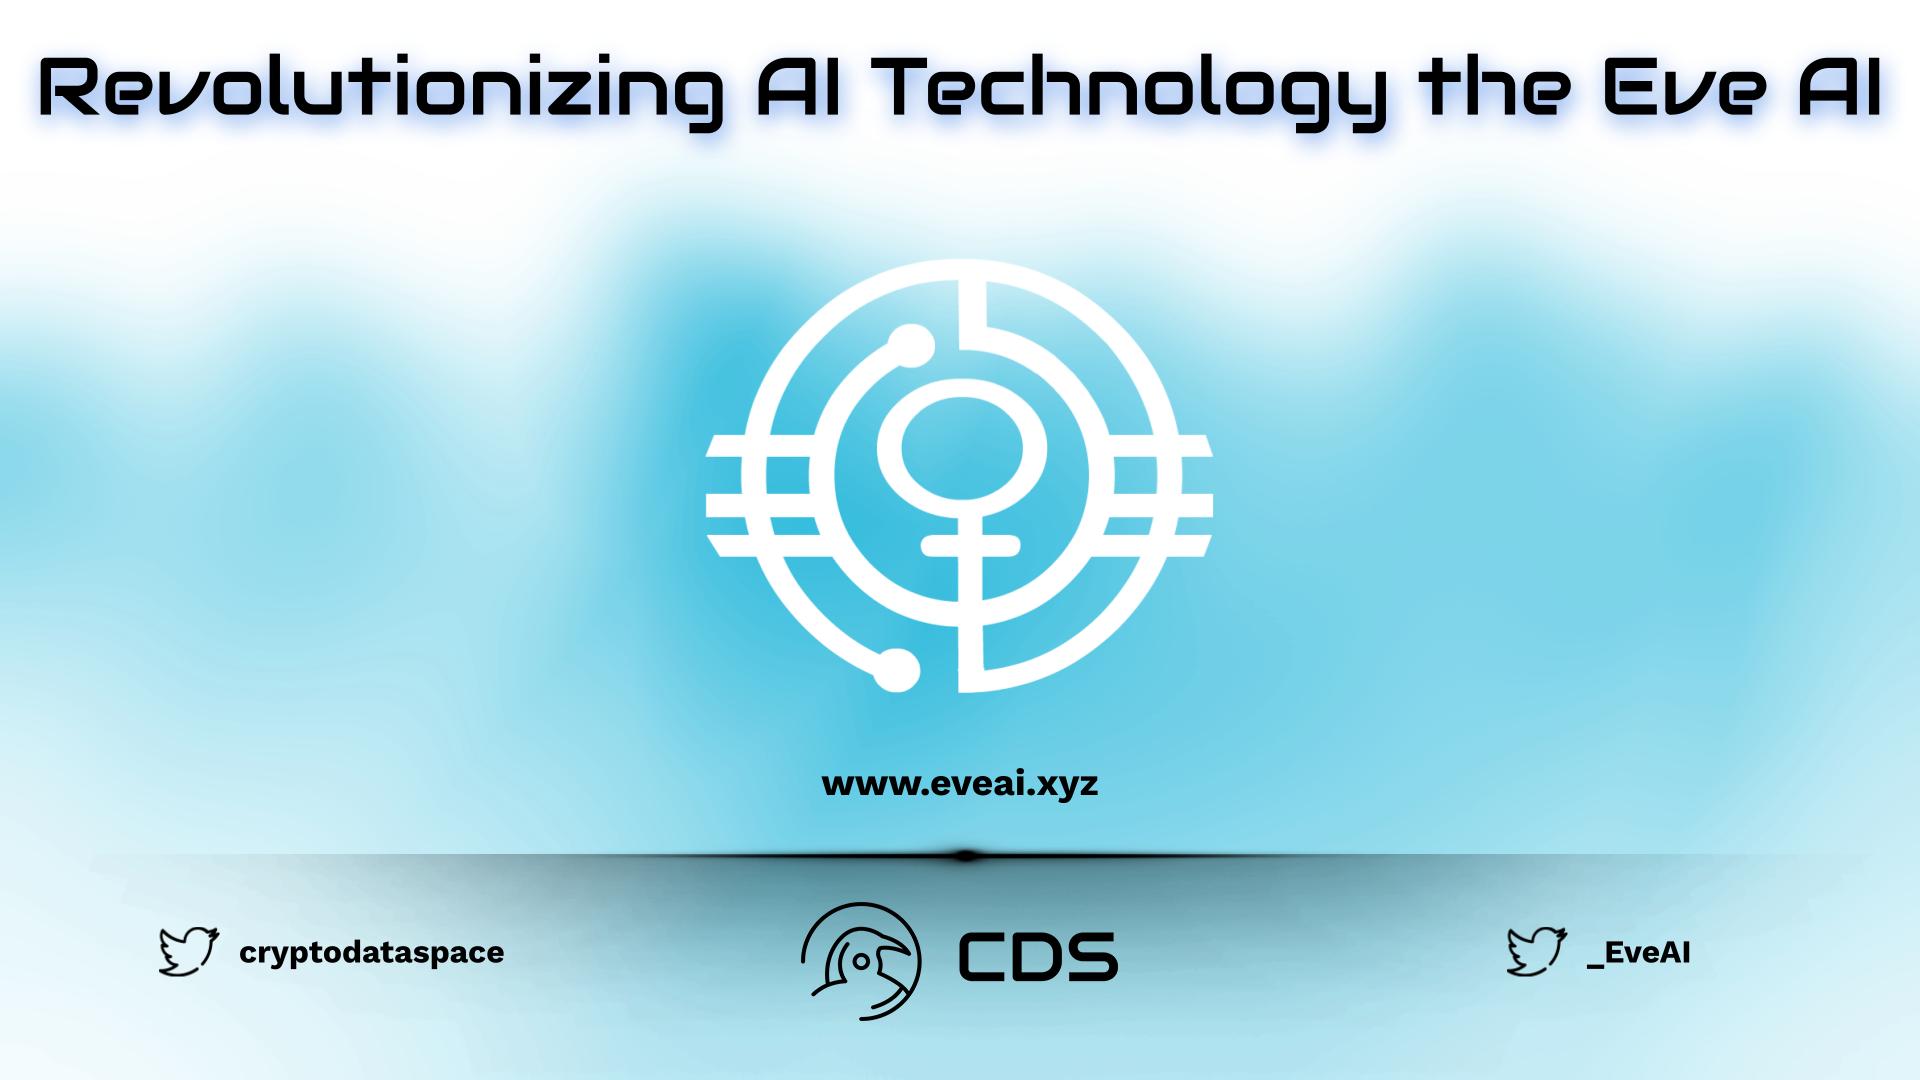 Revolutionizing AI Technology the Eve AI